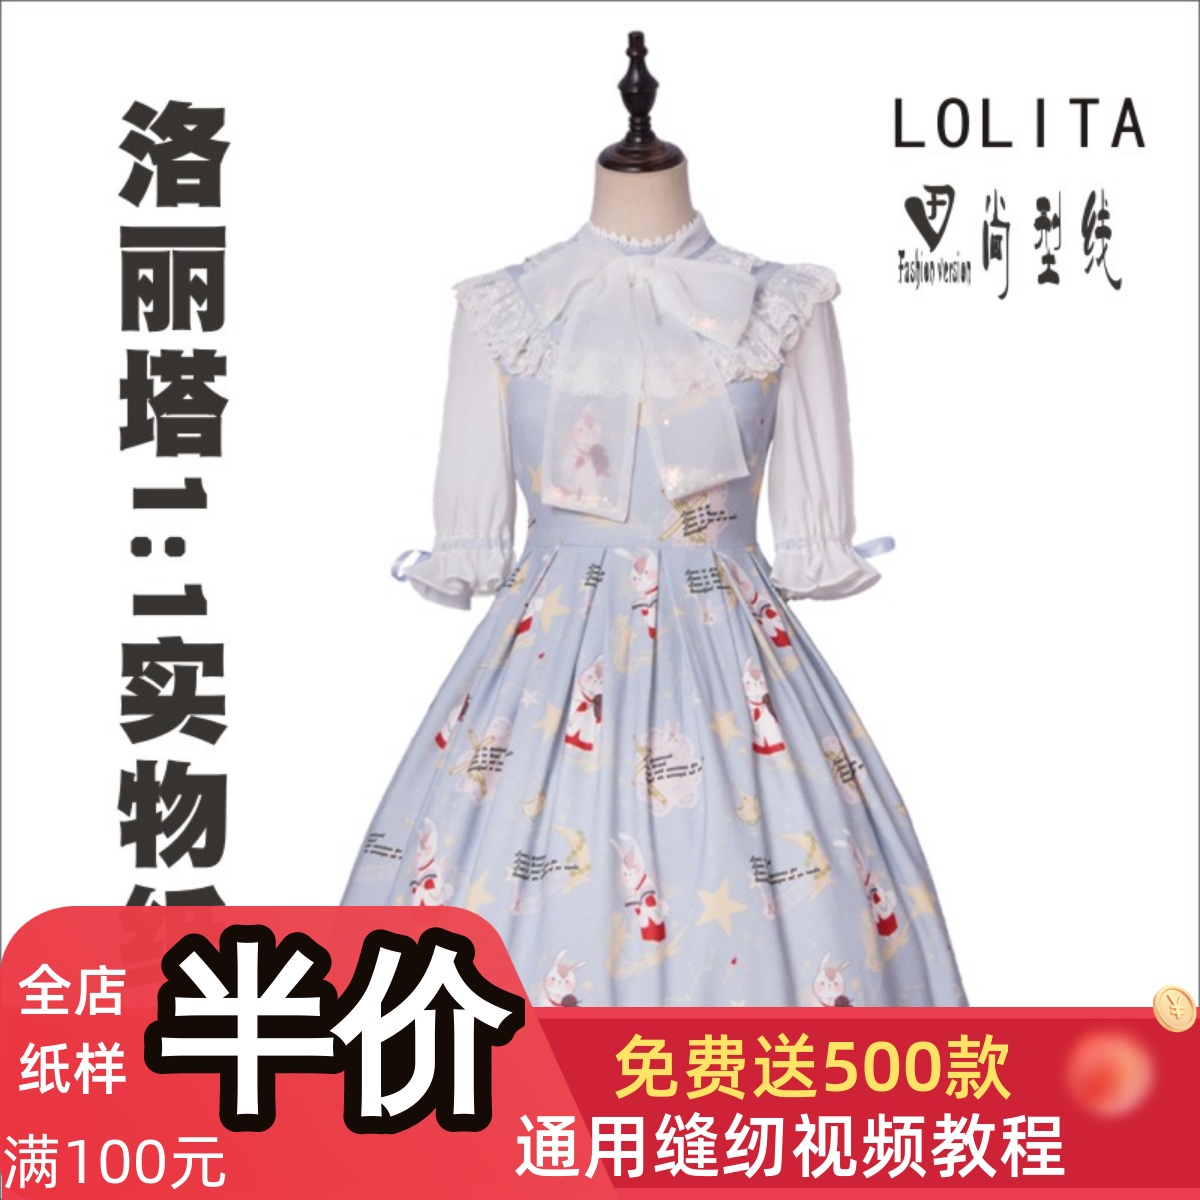 萝莉塔裙子纸样洛丽塔洋装中袖lolita裁剪图连衣裙纸样LOLI-9